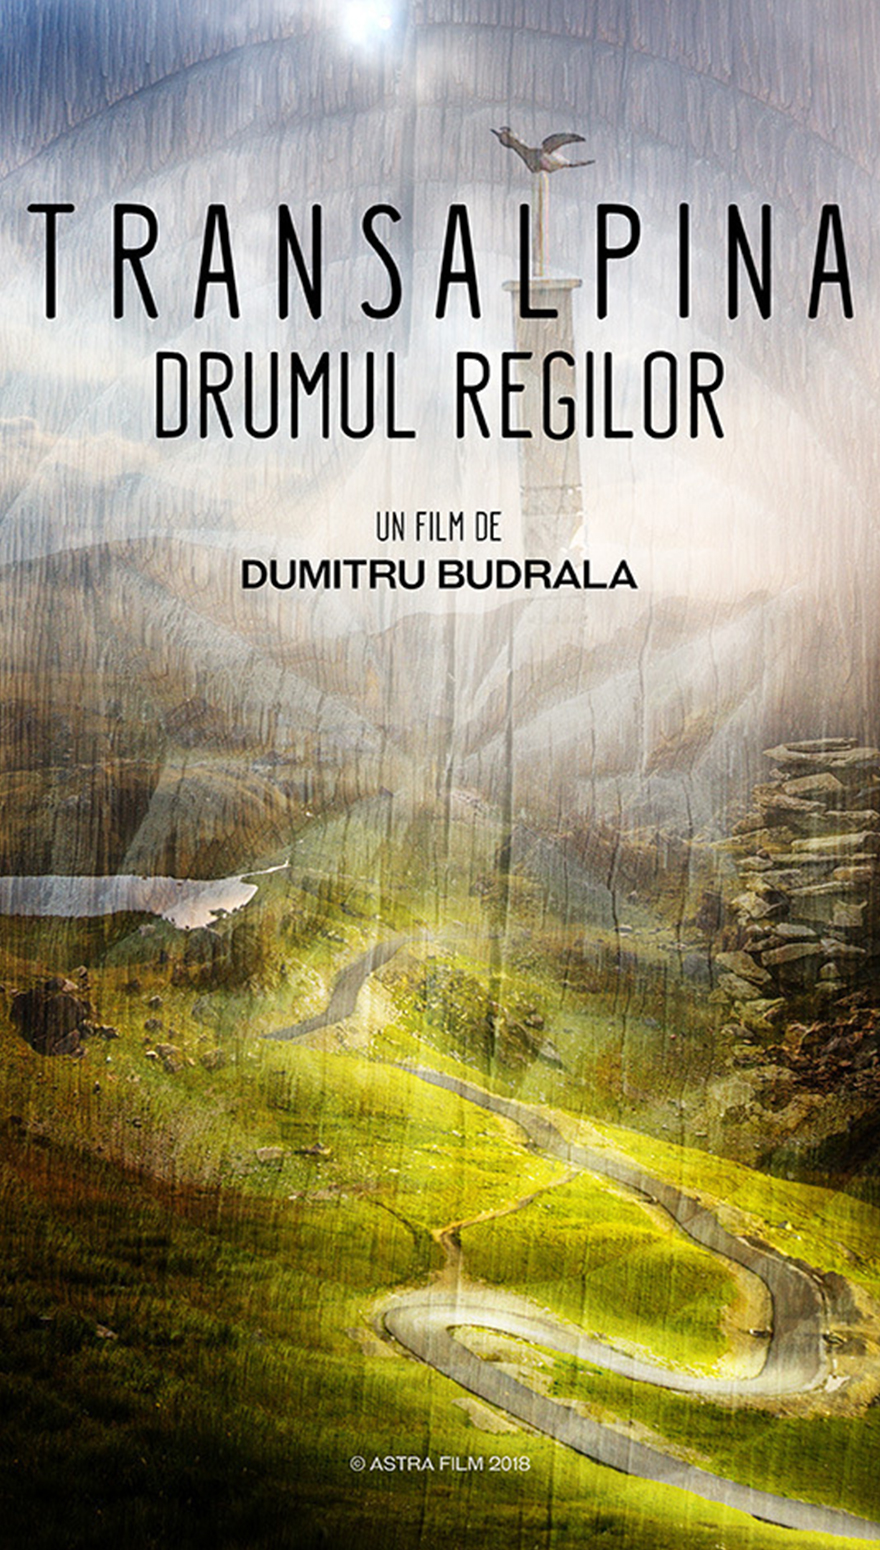 Transalpina - drumul regilor - de Dummitru Budrala - documentar online pe CINEPUB